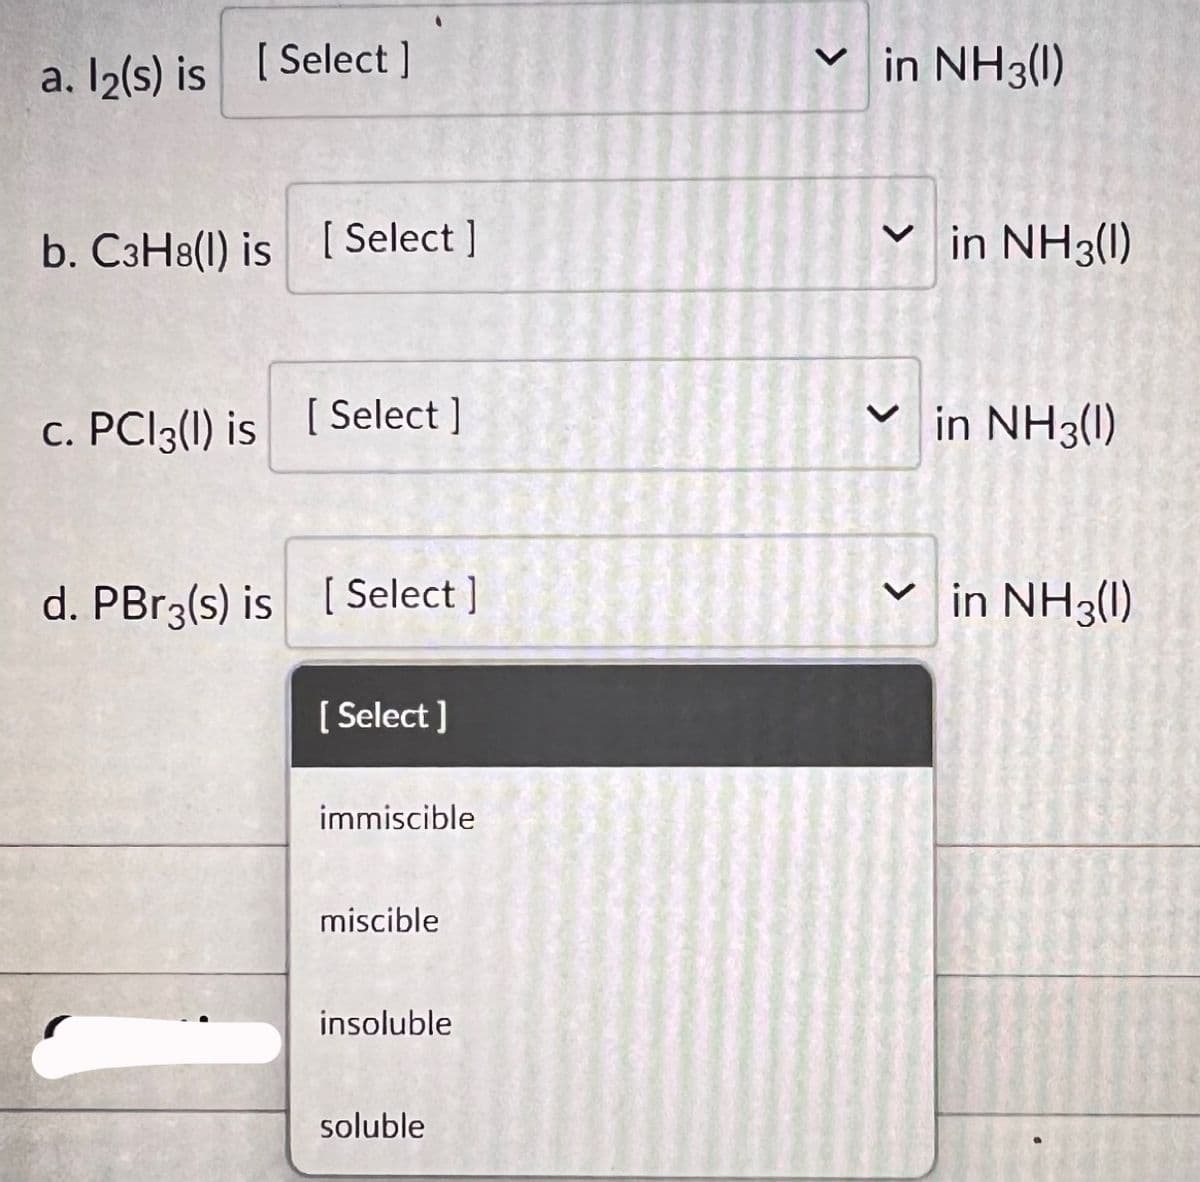 [ Select]
a. l2(s) is [
b. C3H8(l) is [Select]
c. PC13(1) is [Select]
d. PBr3(s) is [Select]
[Select]
immiscible
miscible
insoluble
soluble
✓in NH3(1)
✓in NH3(1)
<
in NH3(1)
✓in NH3(1)